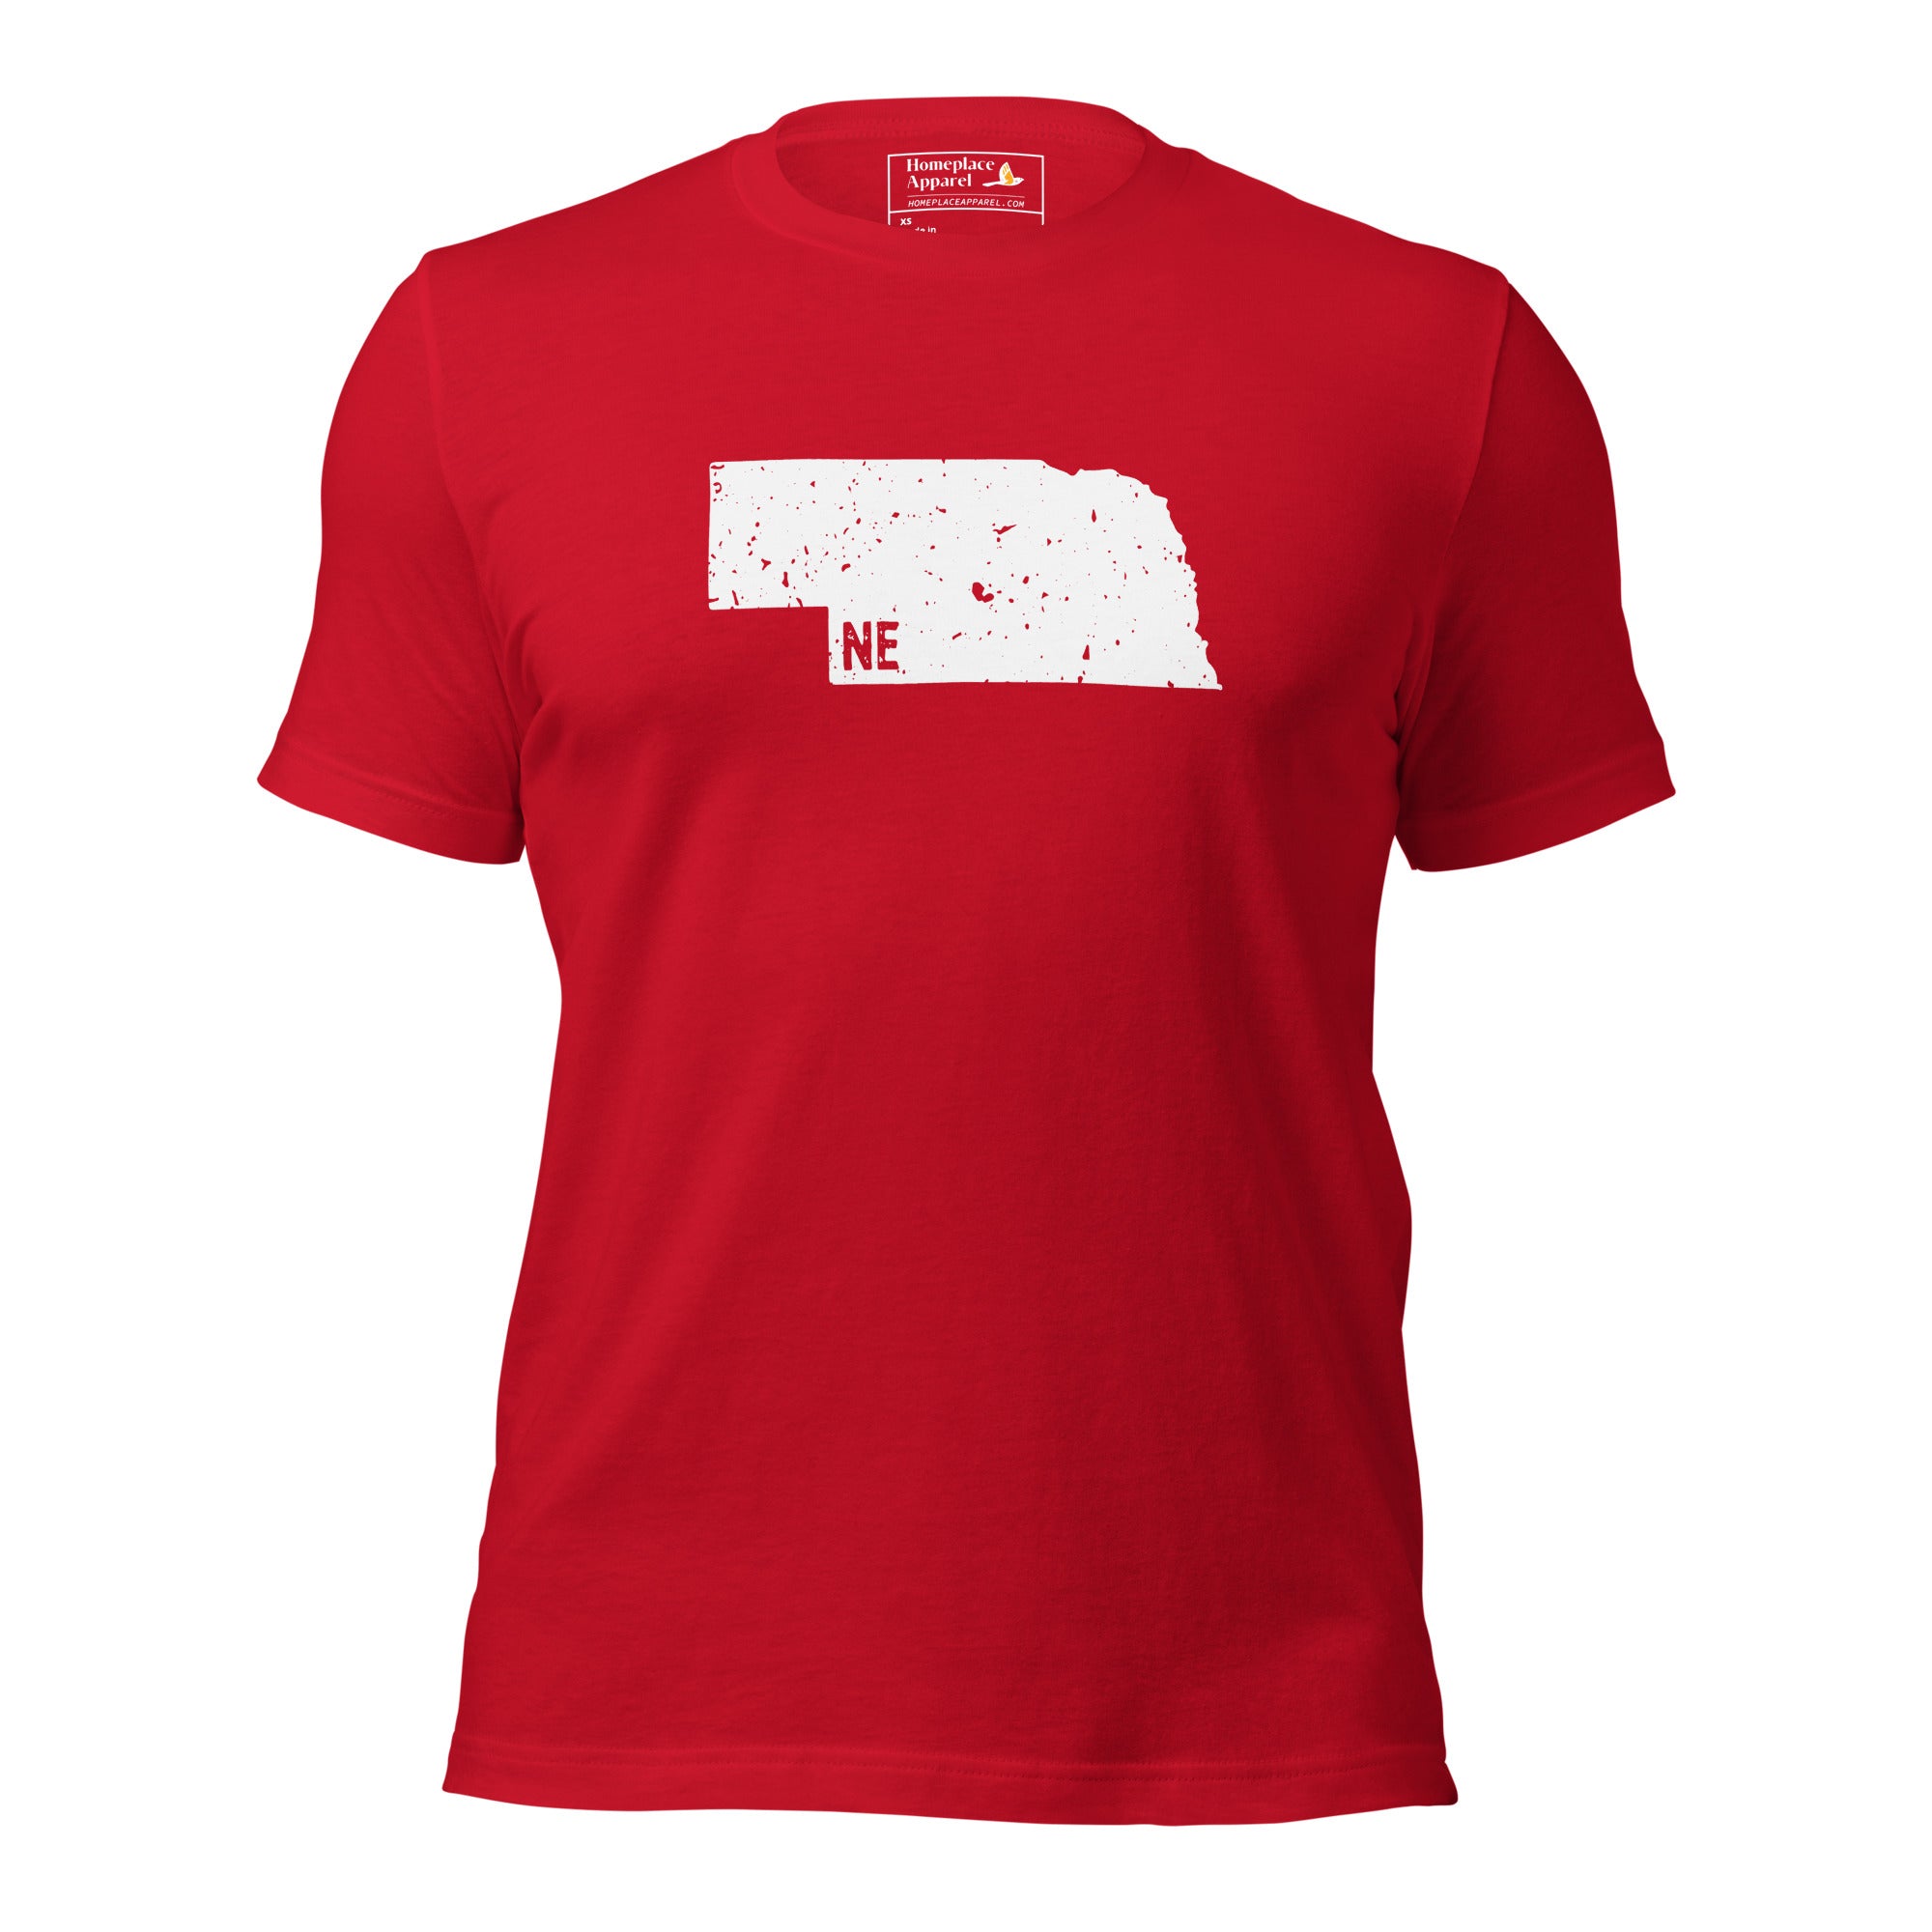 unisex-staple-t-shirt-red-front-650c51144fccb.jpg